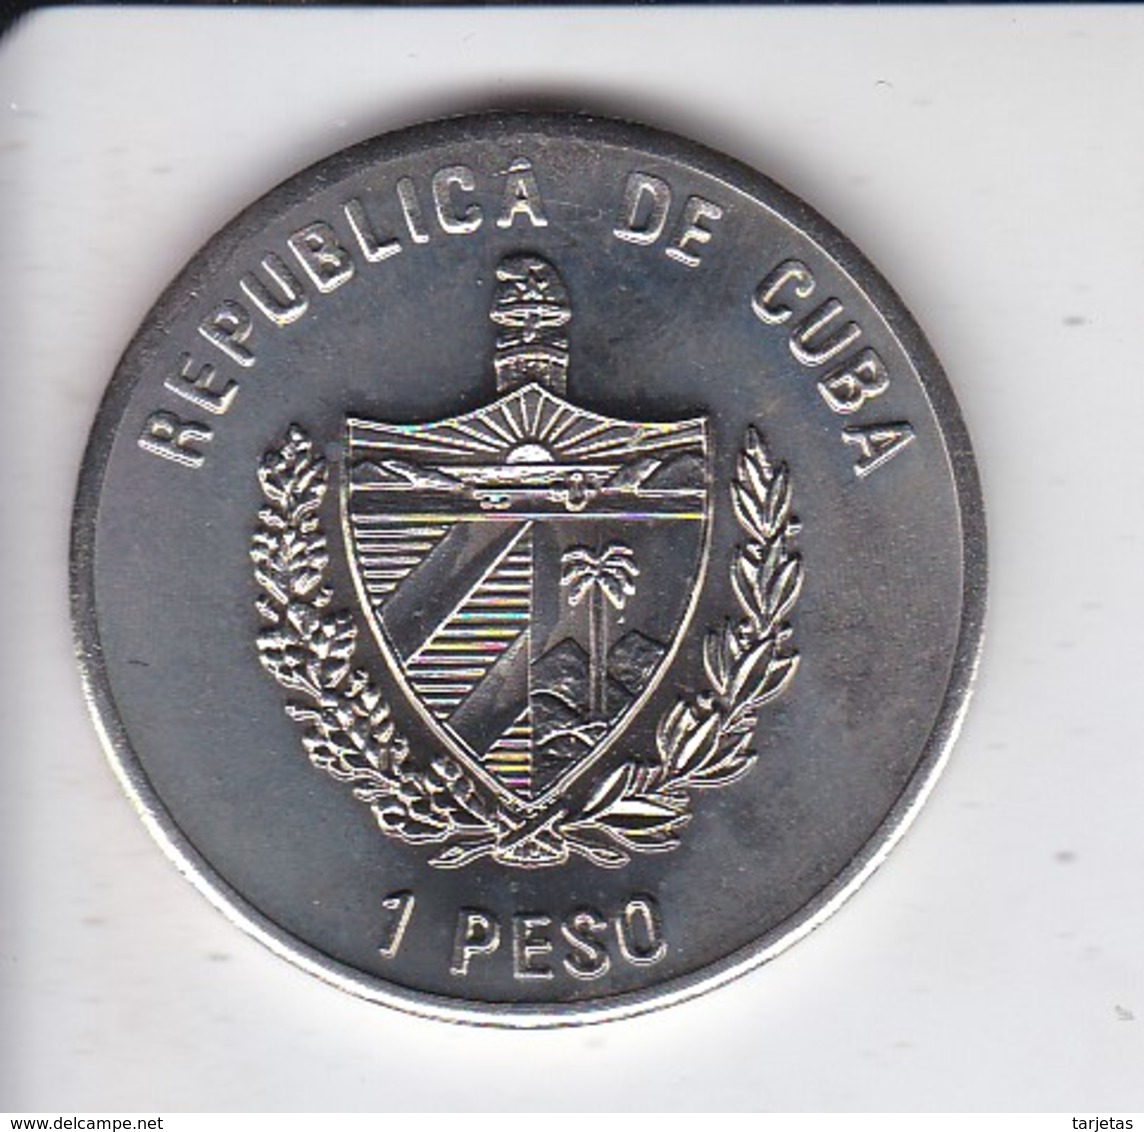 MONEDA DE CUBA DE 1 PESO DEL AÑO 1995 DE PIRATAS DEL CARIBE - SIR HENRY MORGAN - Cuba